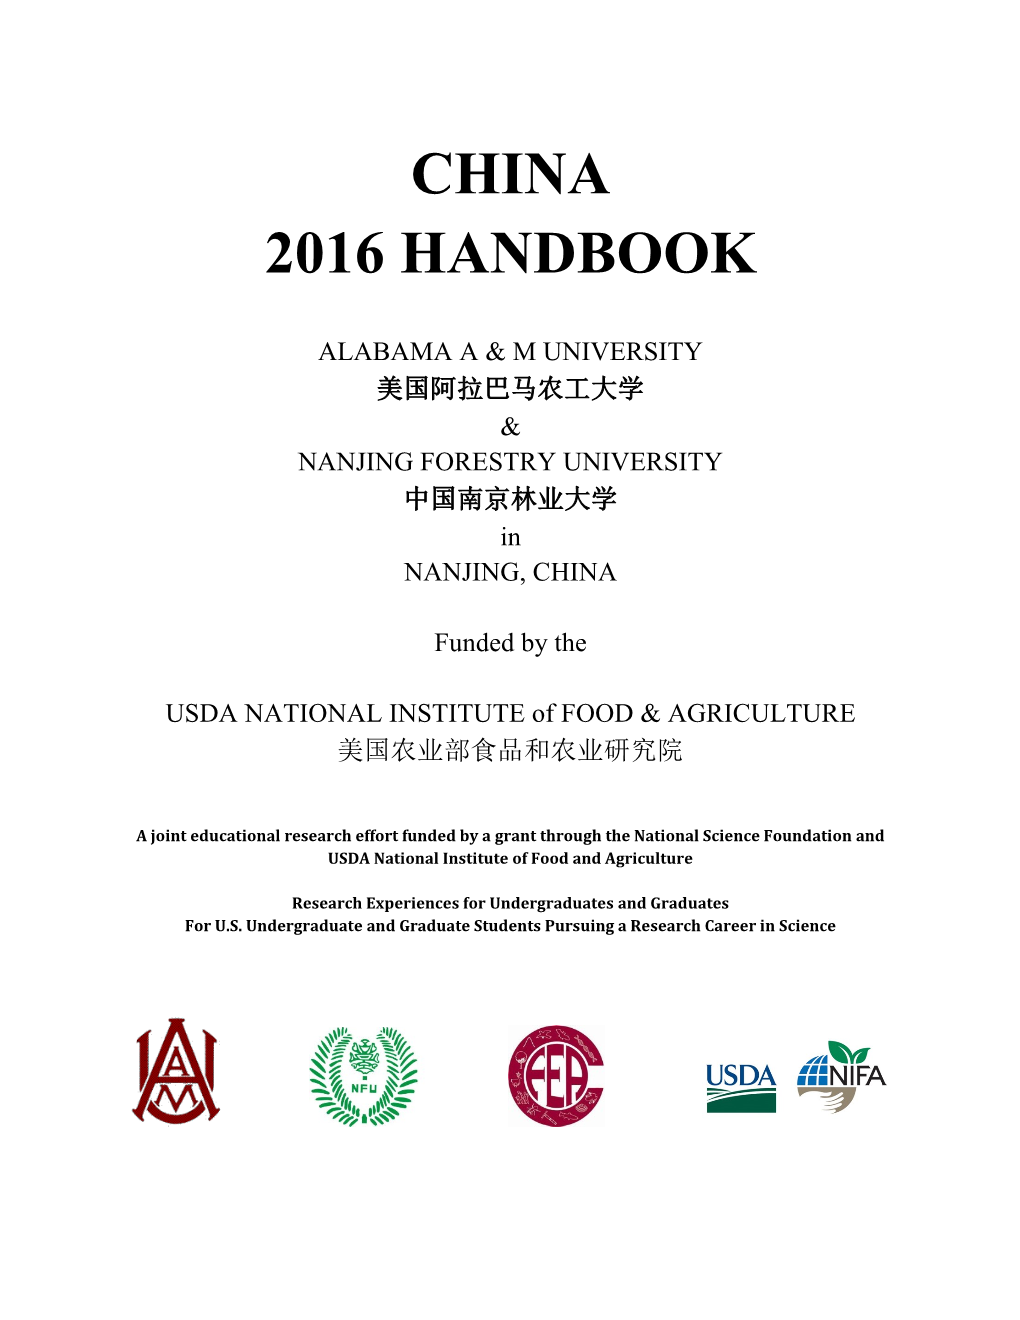 China 2016 Handbook